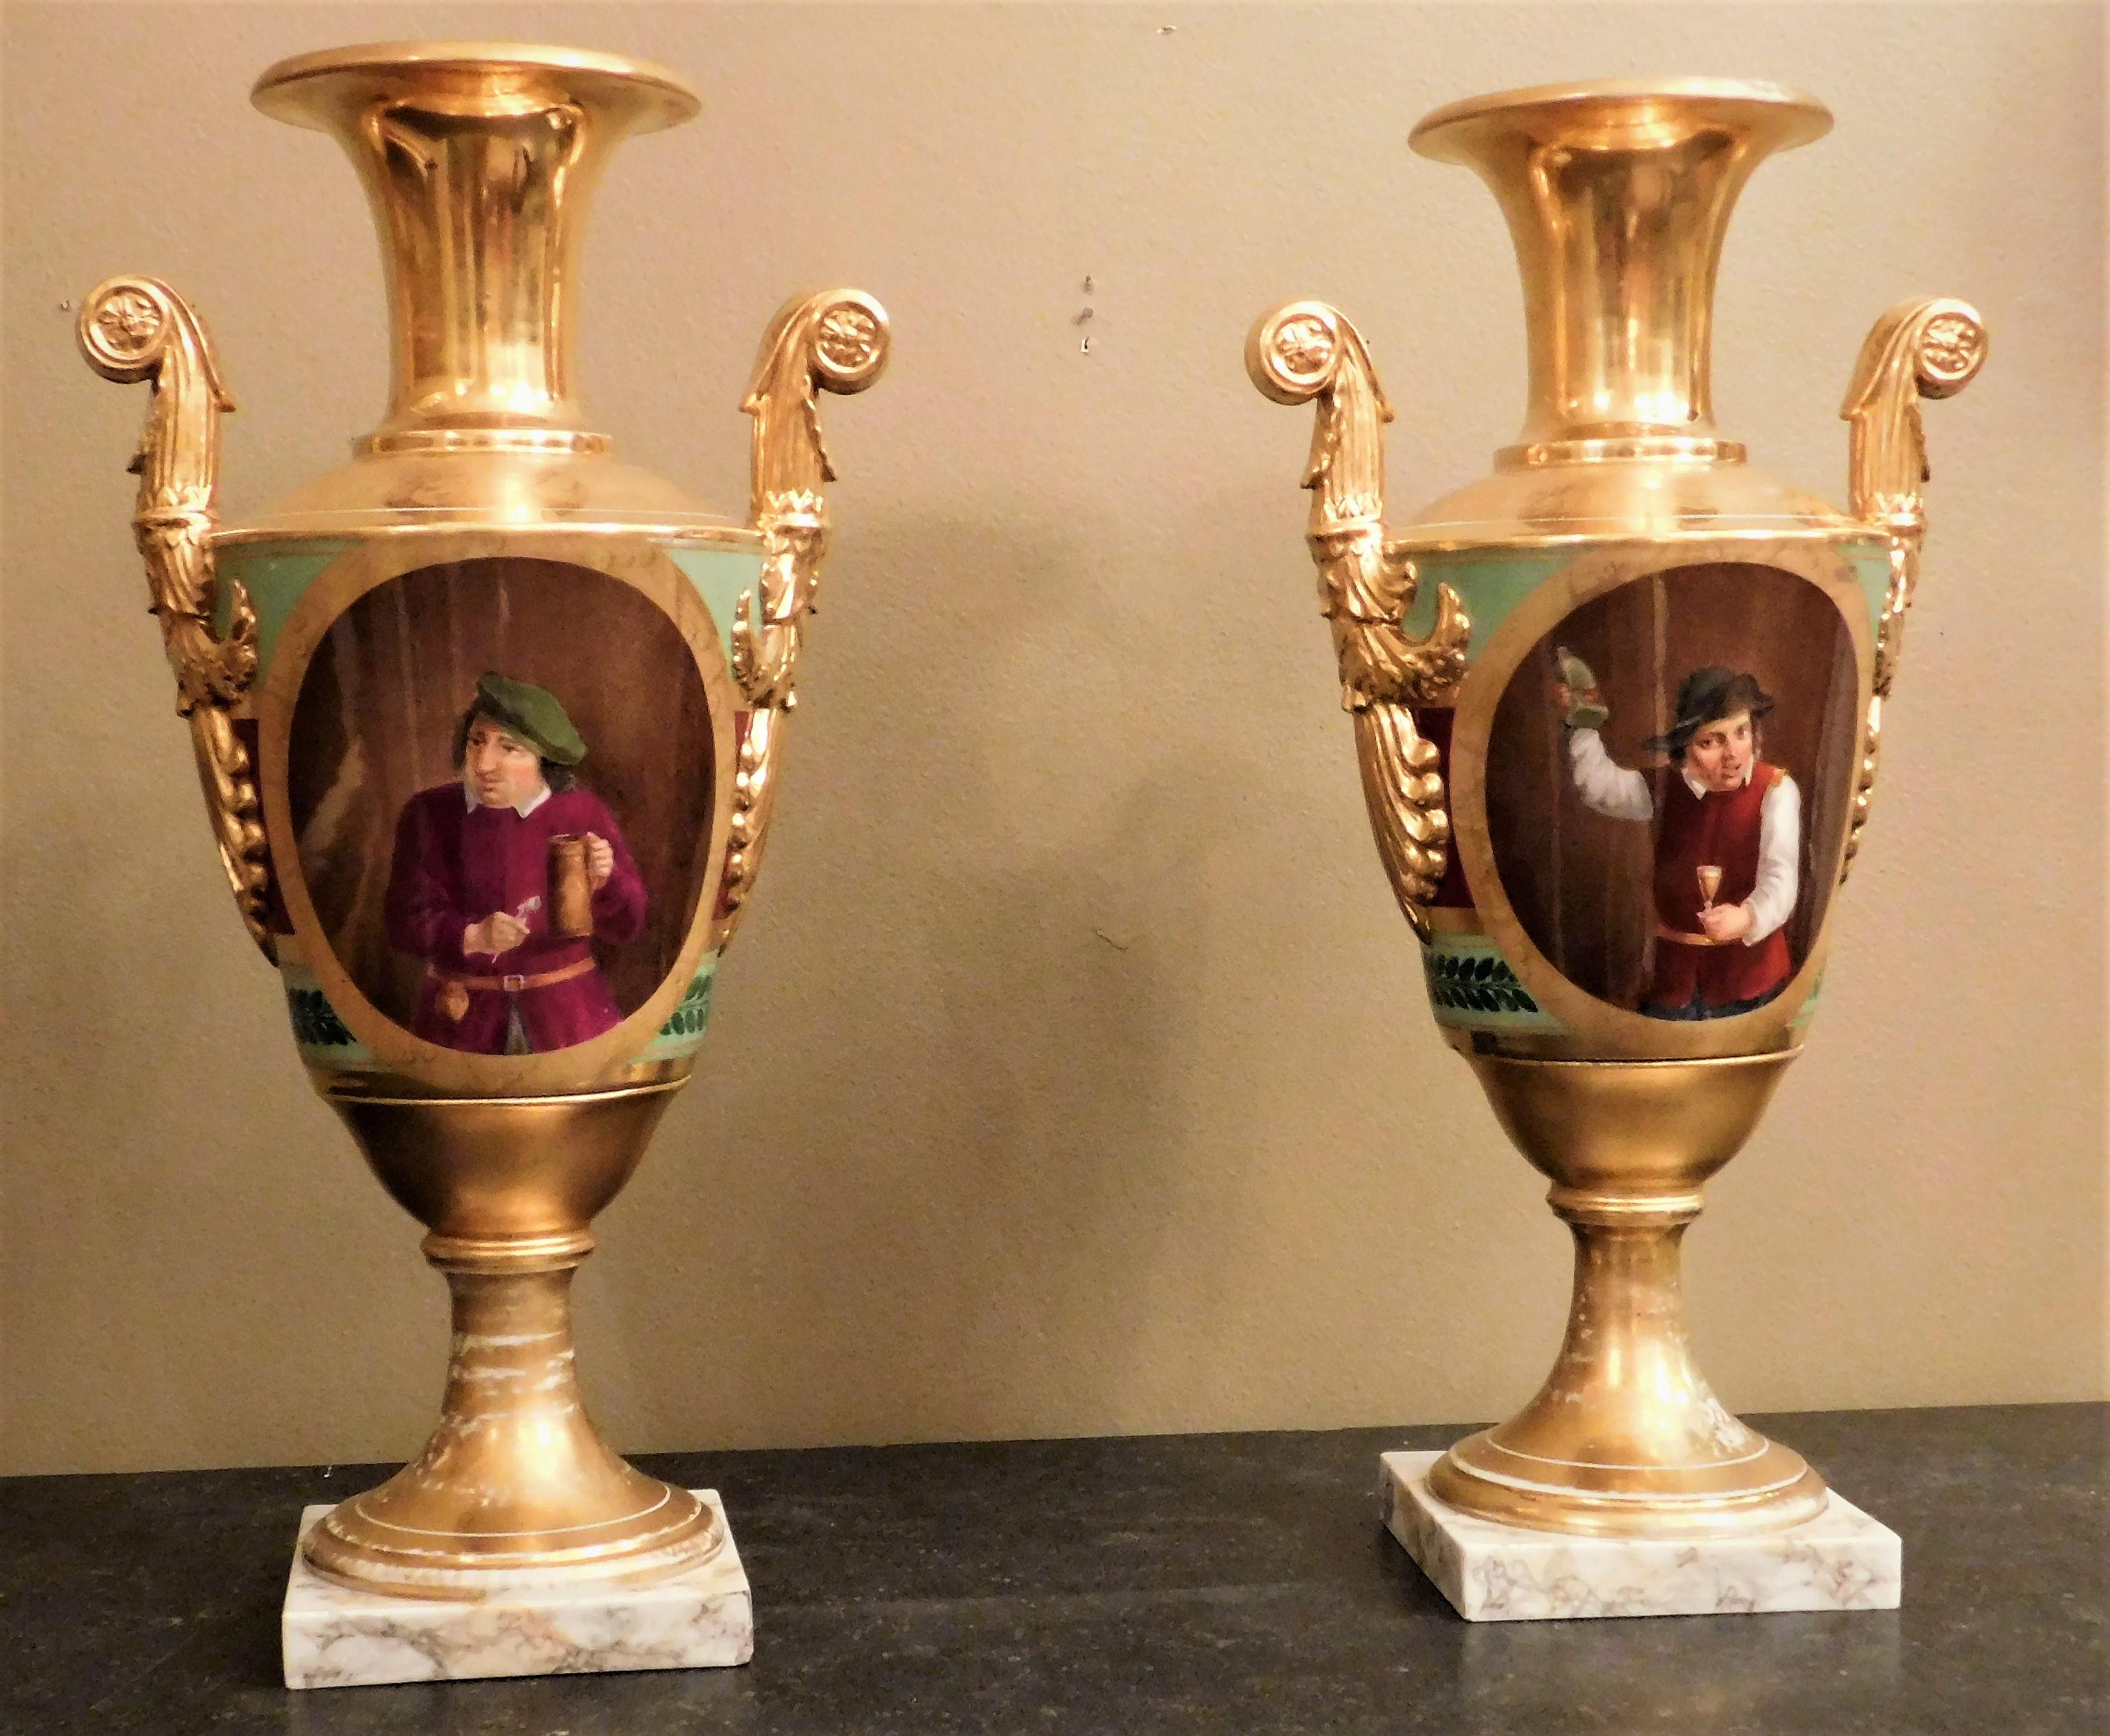 Cette paire de vases néoclassiques du Vieux Paris de forme conique présente des motifs romains classiques sur une face. Les portraits de l'autre côté représentent un ivrogne sur un vase et un abstinent sur l'autre vase. Décoration dorée contrastée